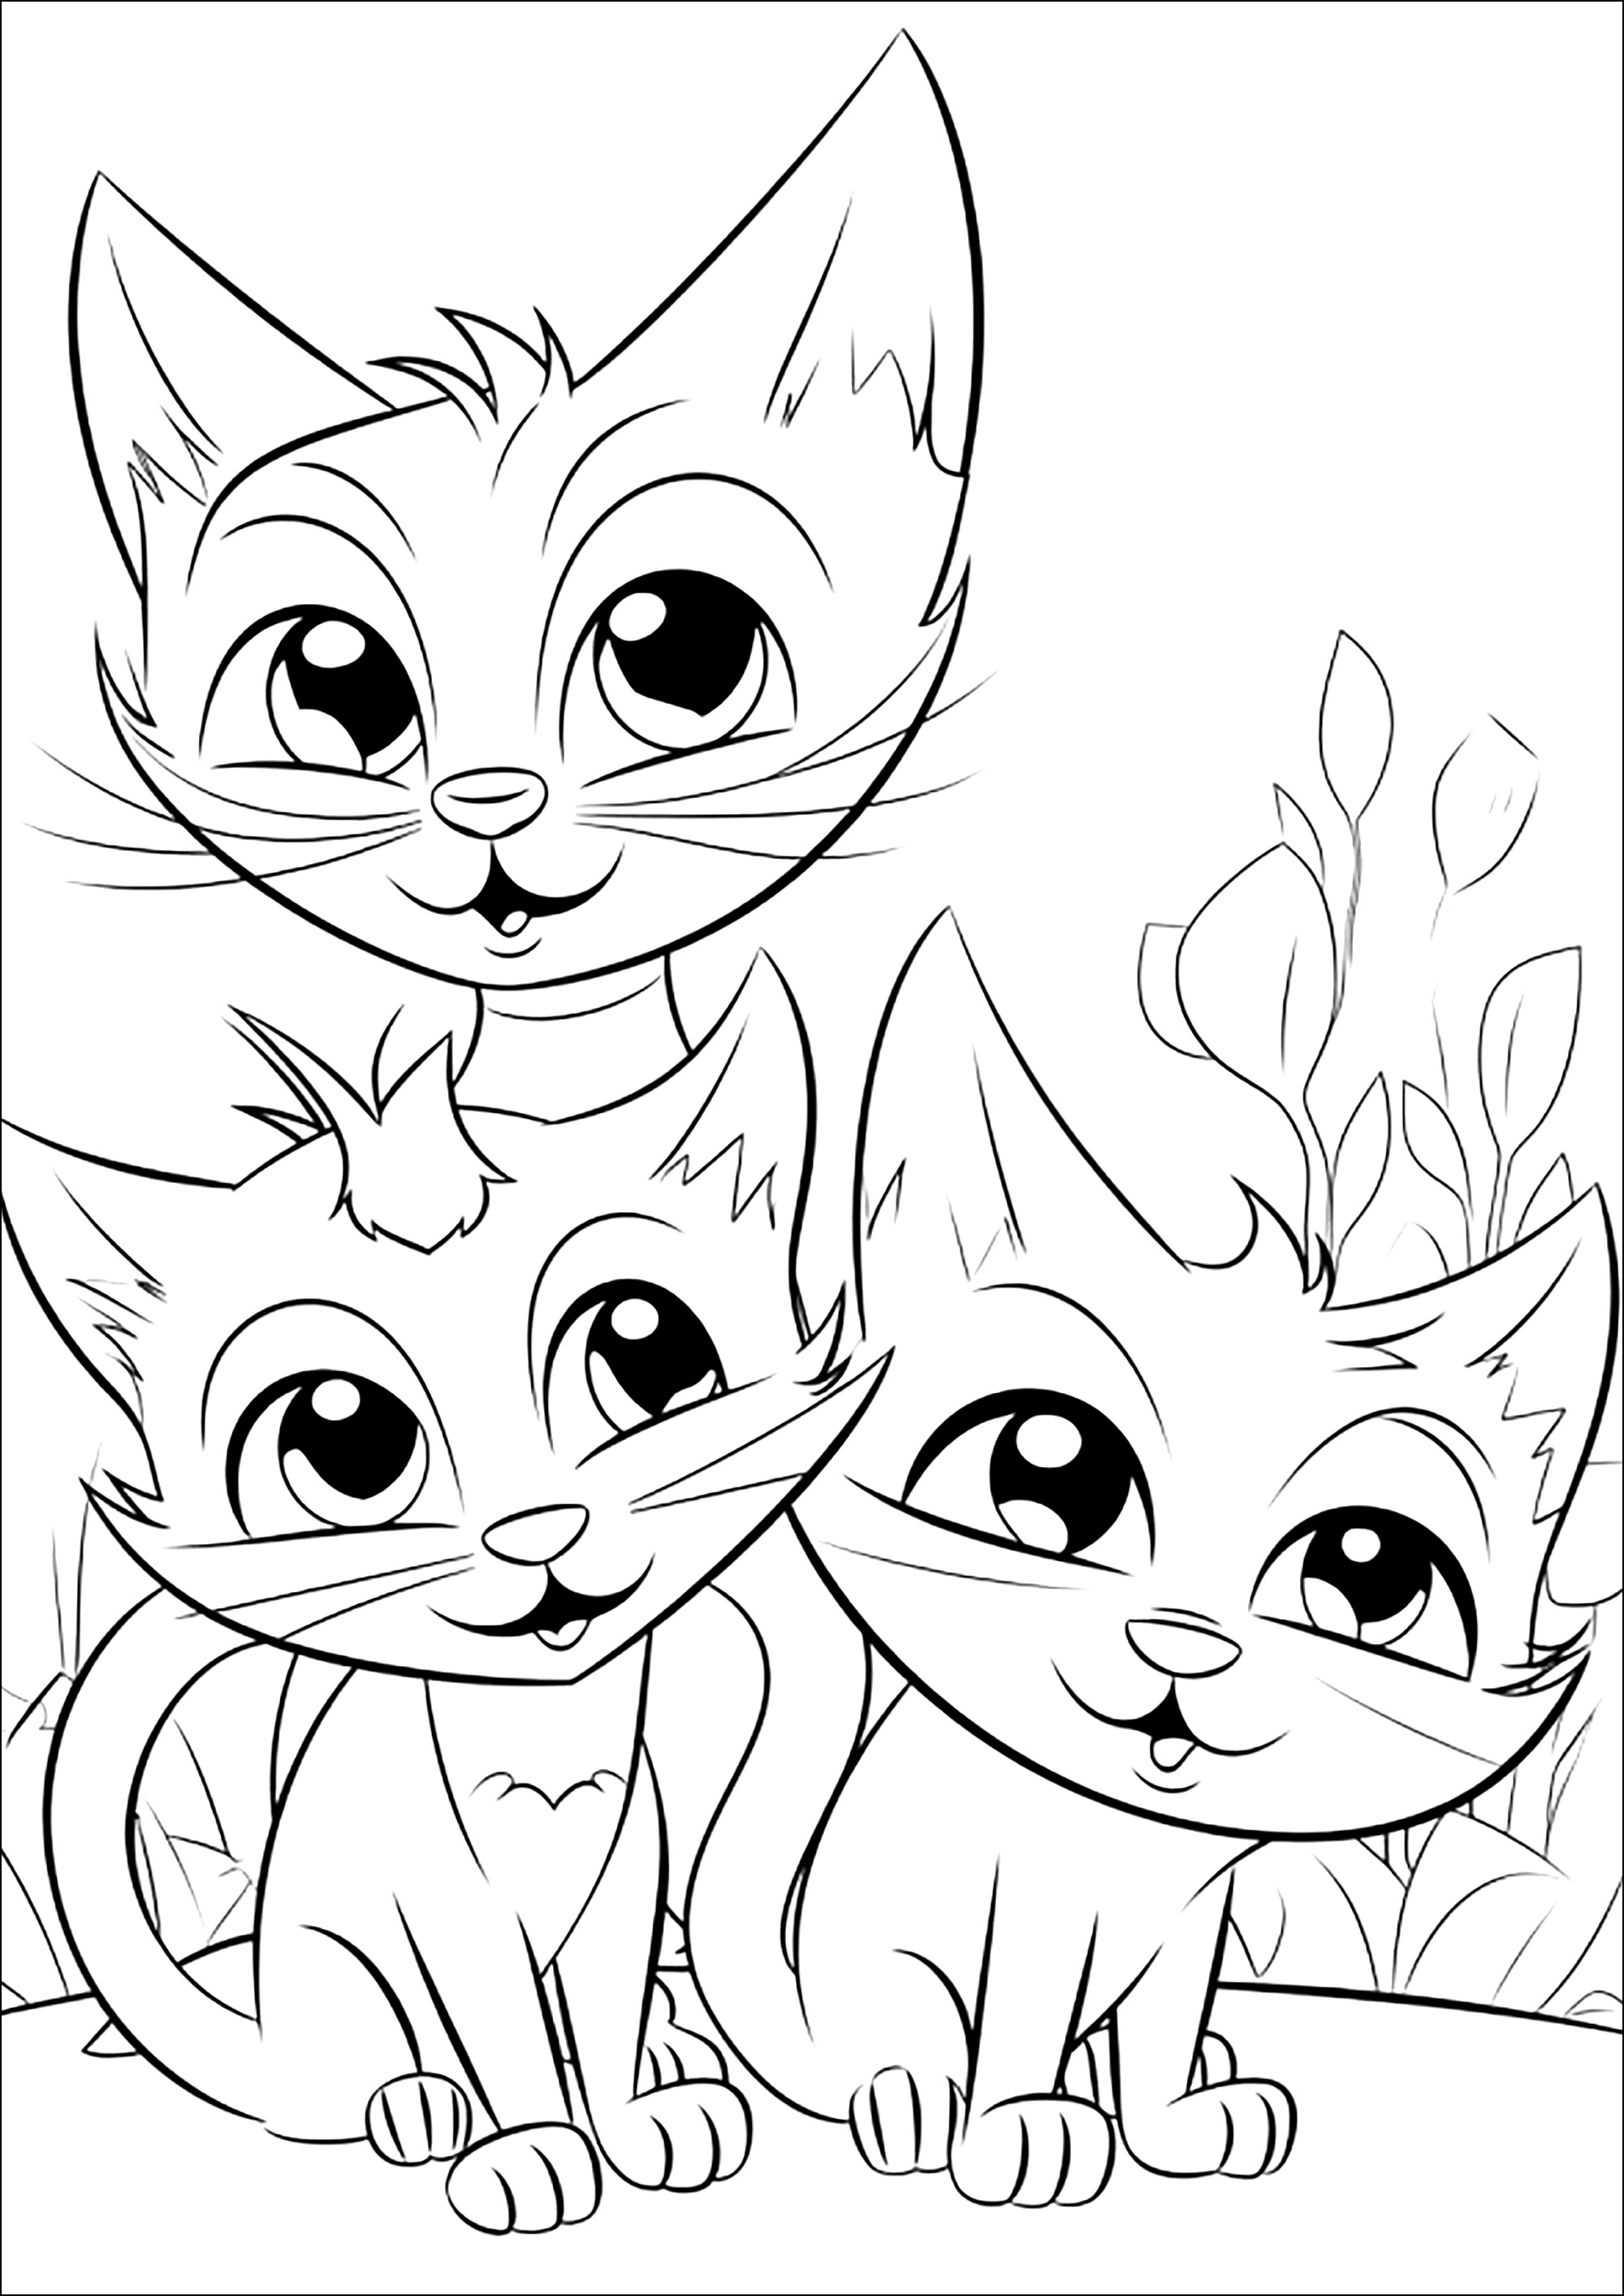 Tres Gatos caraduras. Coloreado muy sencillo, con algunos detalles vegetales al fondo.